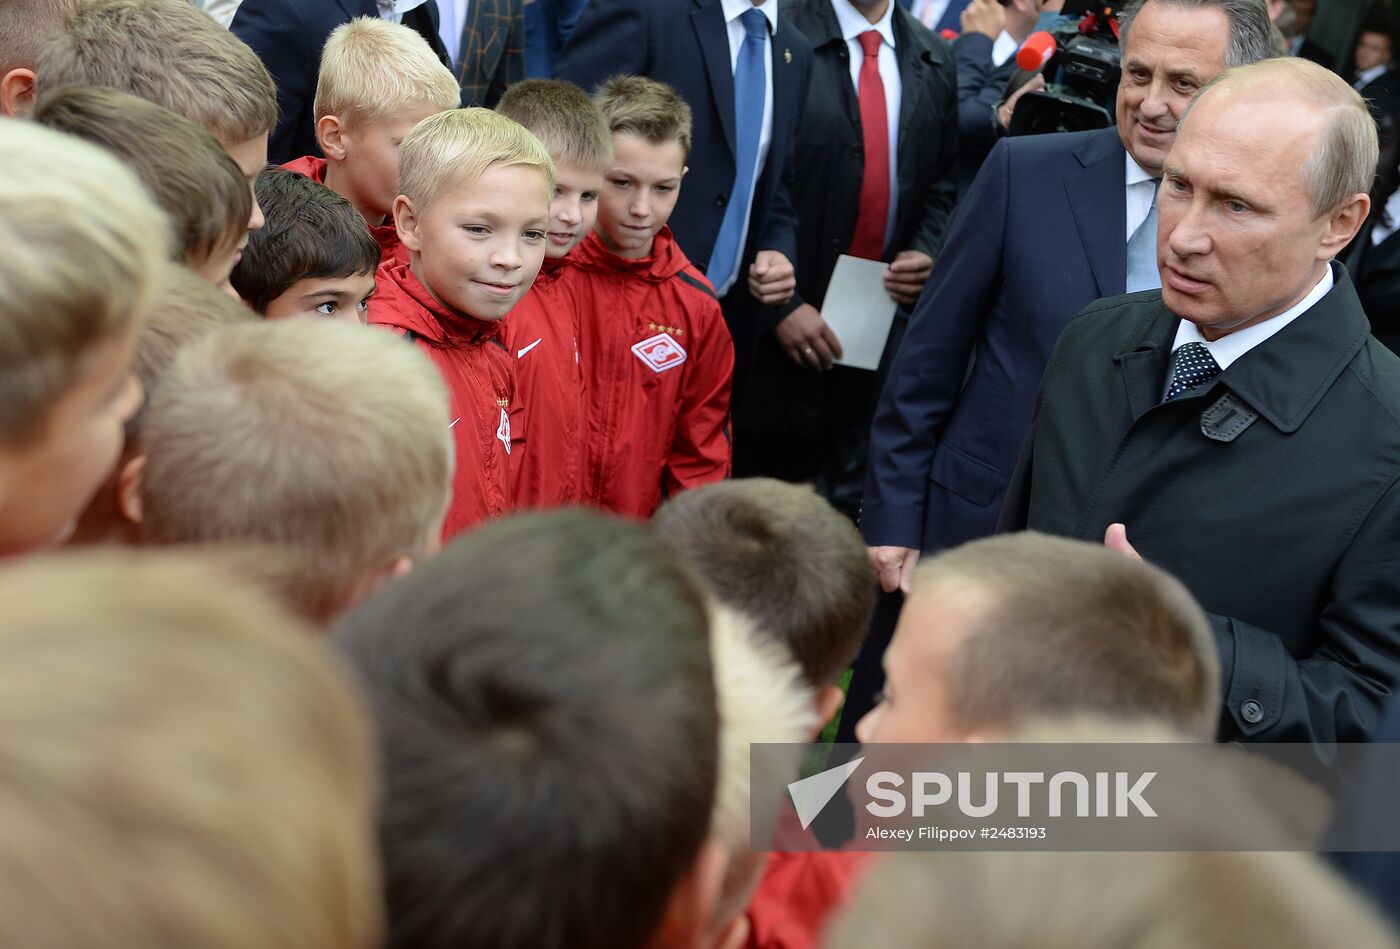 Vladimir Putin visits Otkritie Arena Stadium in Tushino